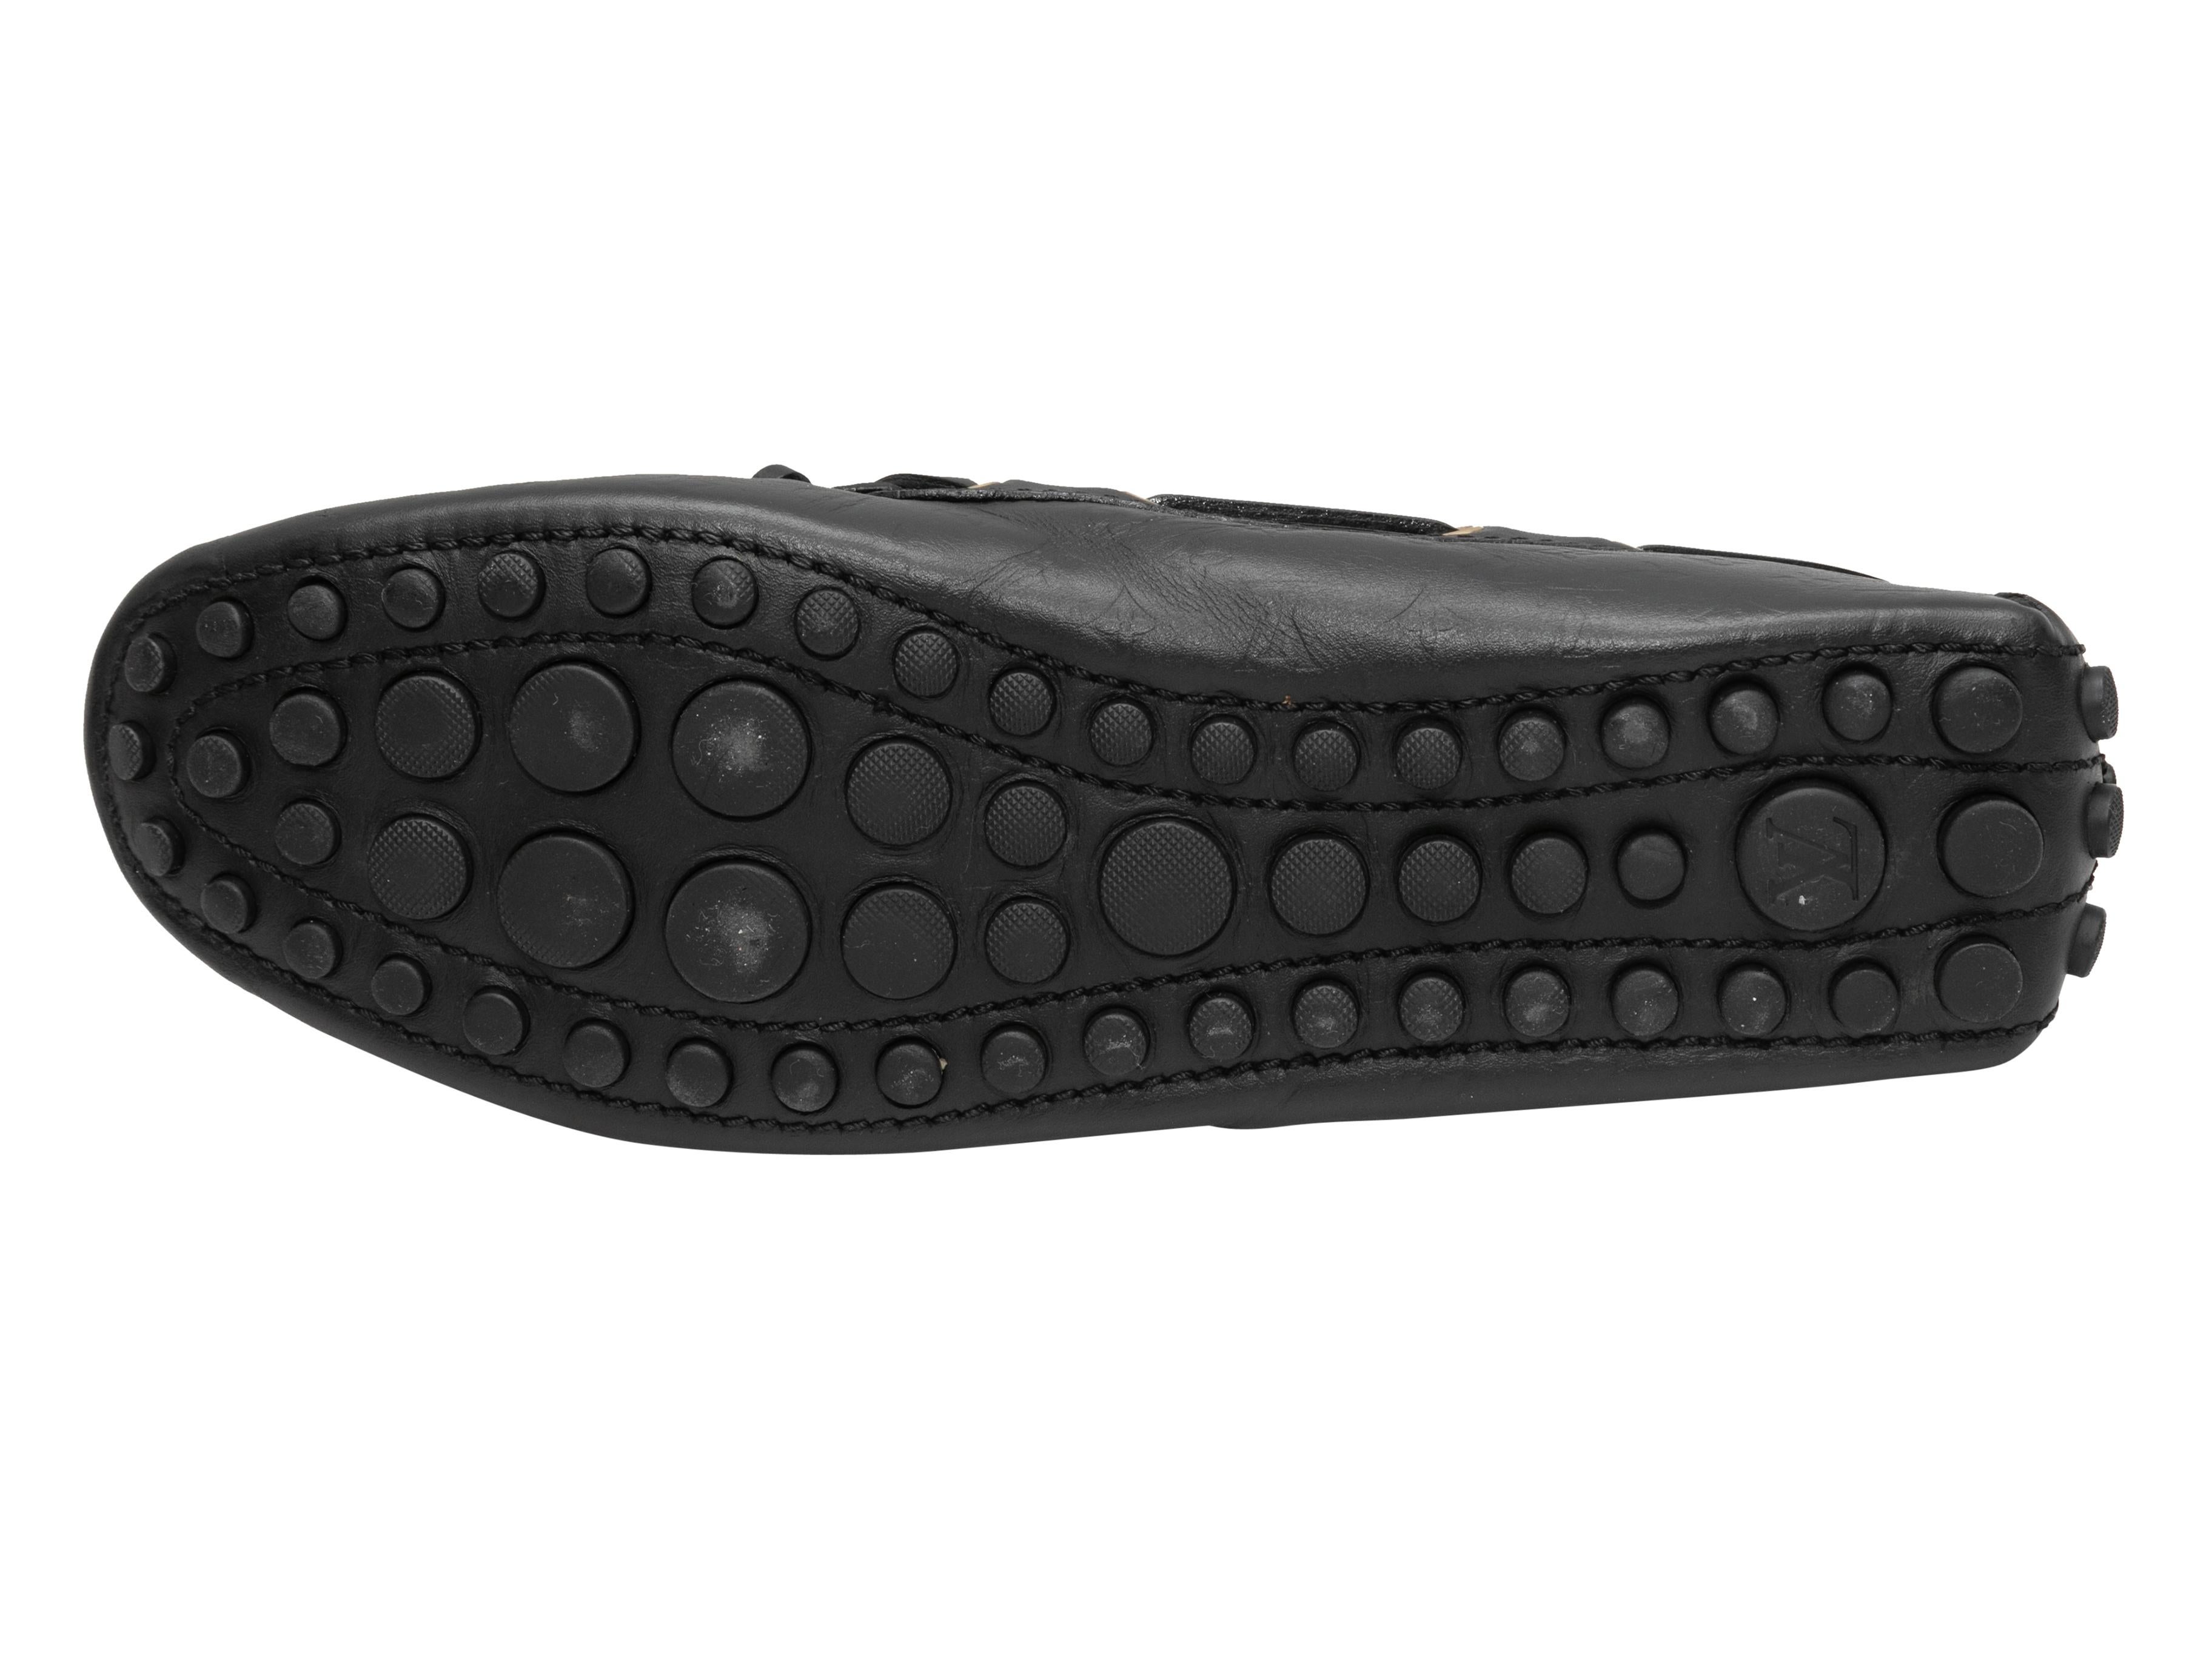 Mocassins en cuir monogrammé embossé noir de Louis Vuitton. Butoirs en caoutchouc au niveau des semelles et des contreforts. Des nœuds sont placés sur le dessus.